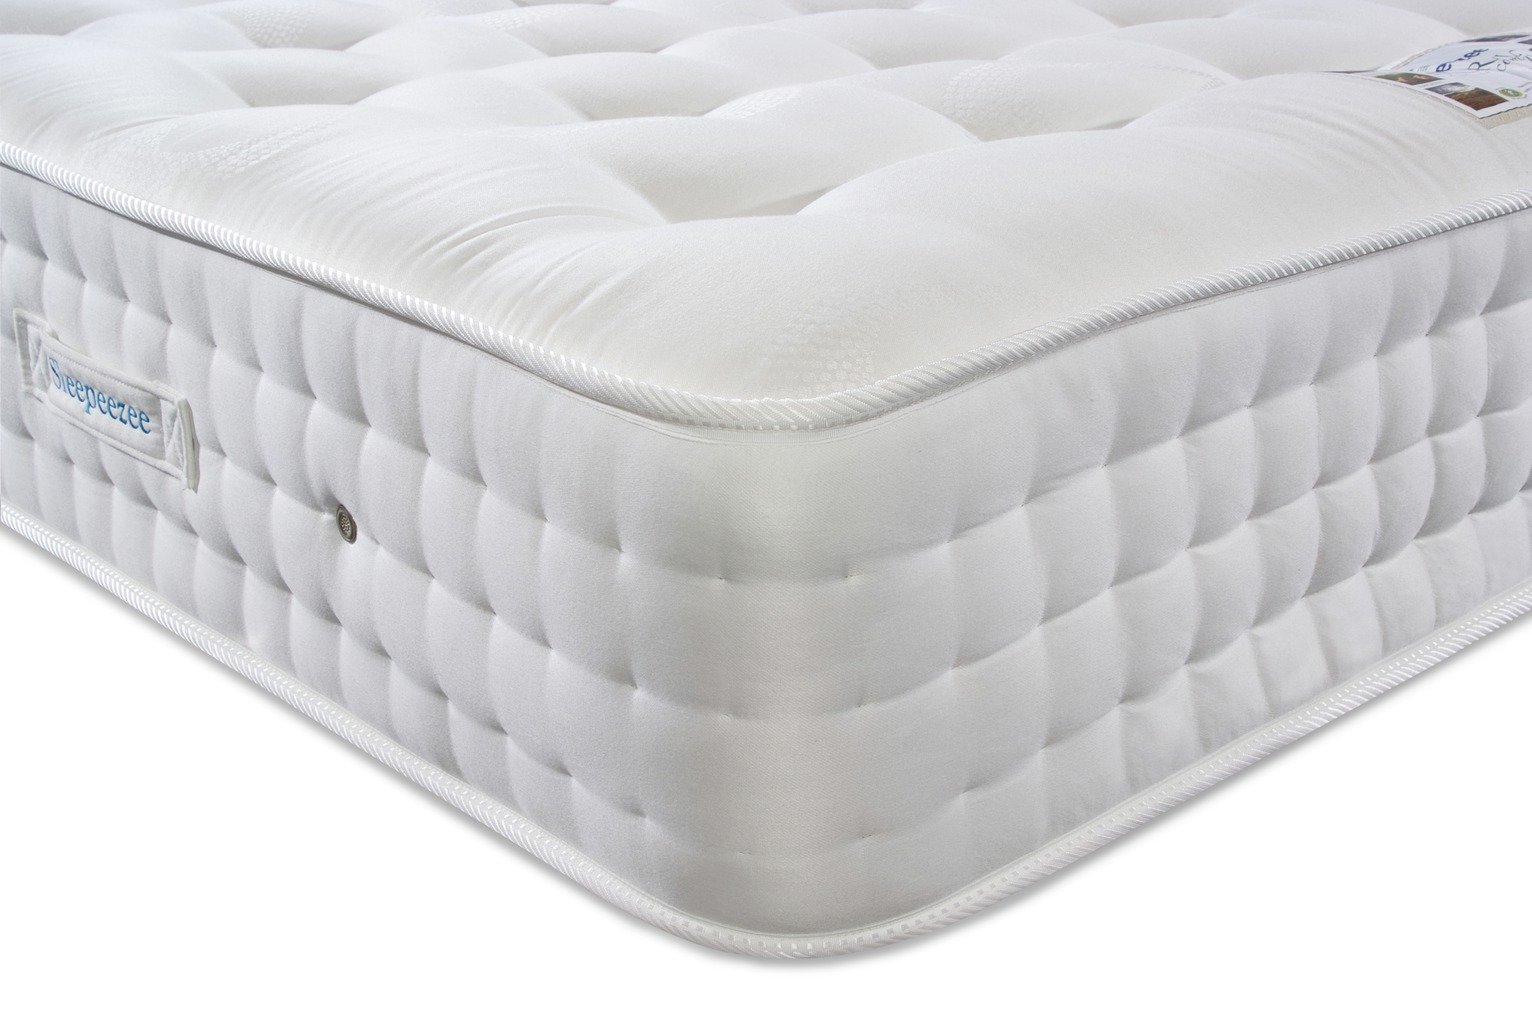 sleepeezee comfortgel hybrid 3000 mattress review